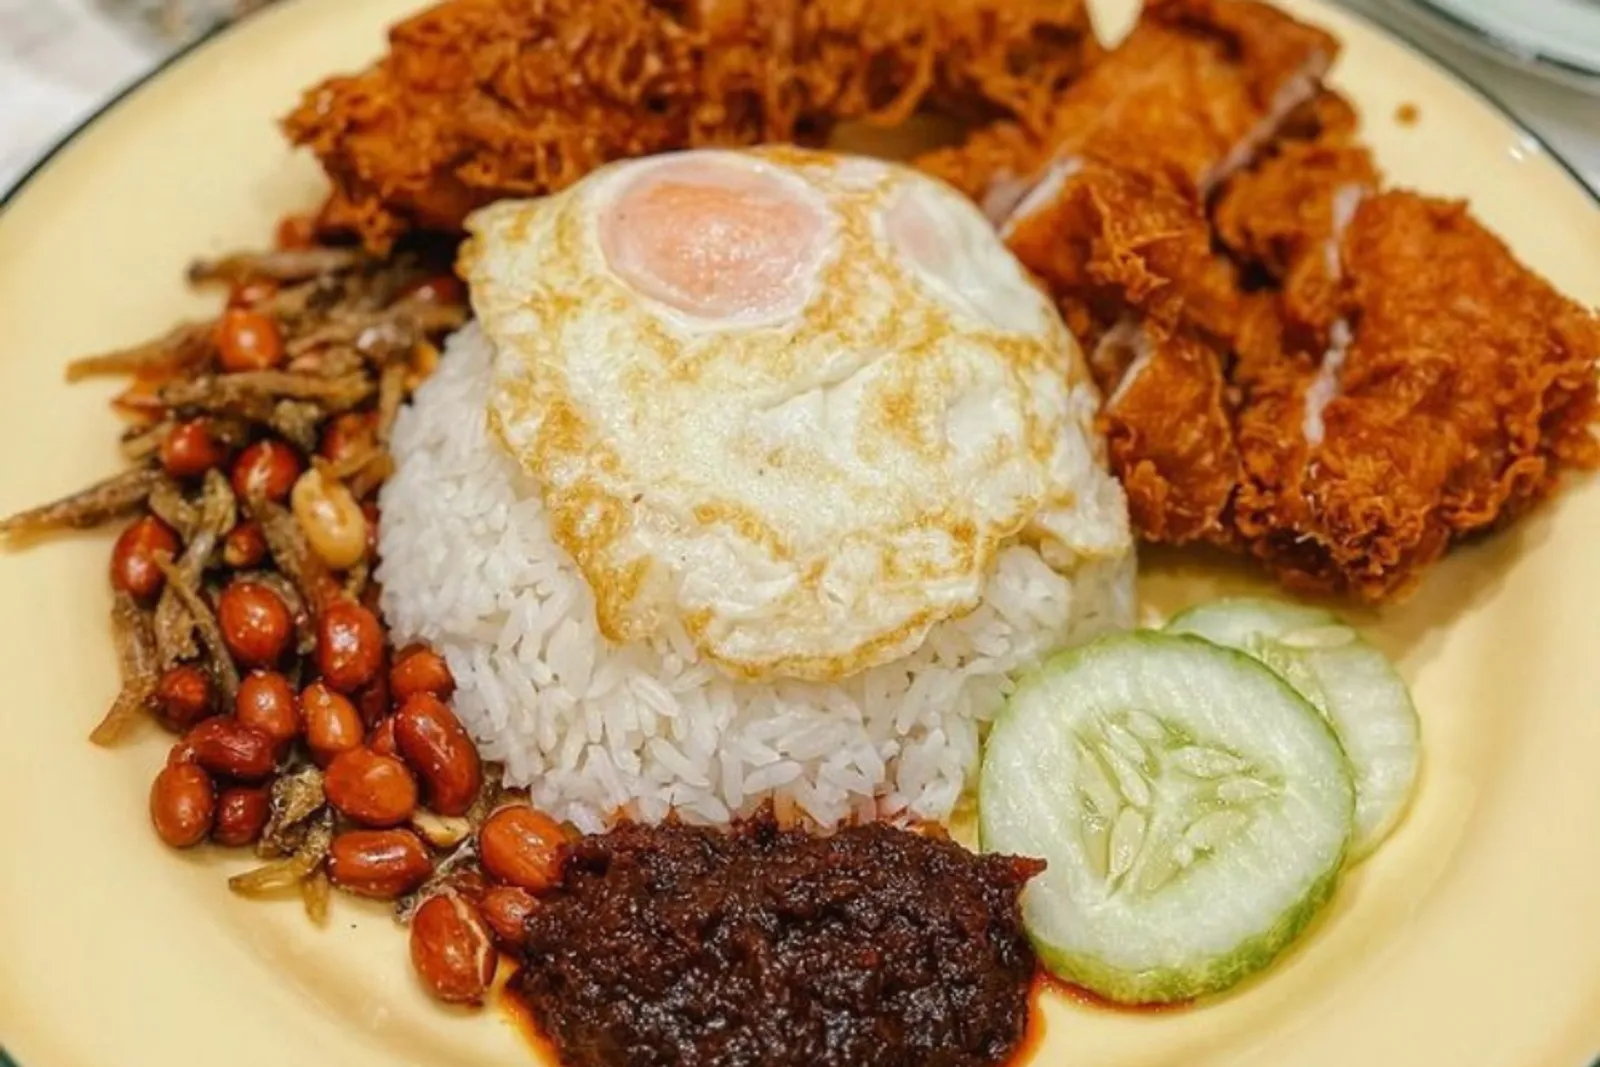 Resep Nasi Lemak, Kuliner Comfort Food Khas Malaysia